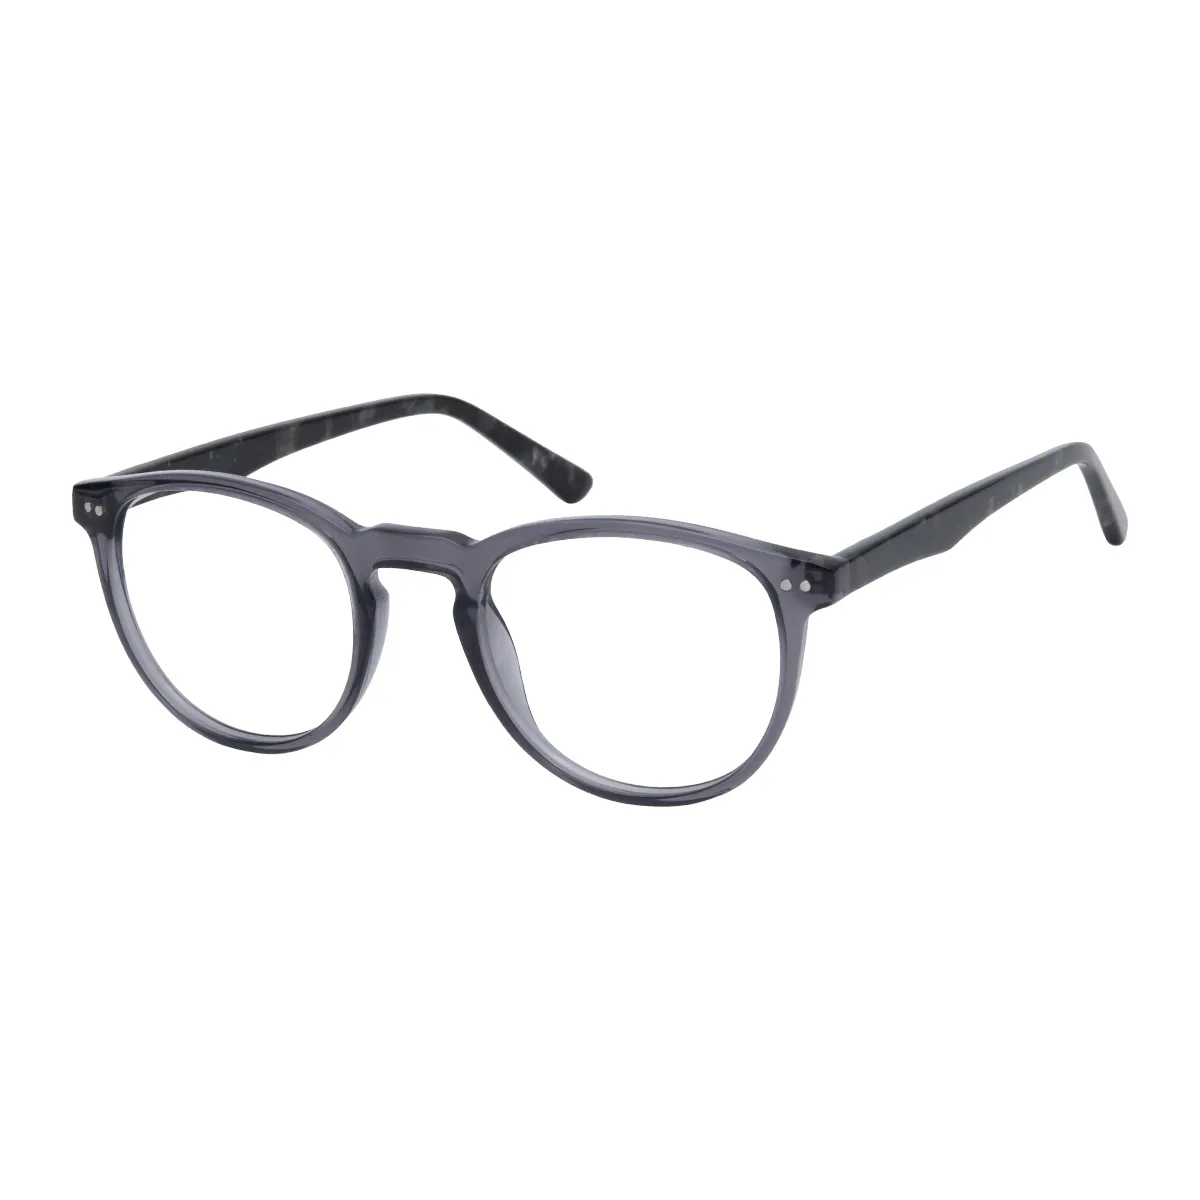 Girasol - Oval Gray Glasses for Men & Women